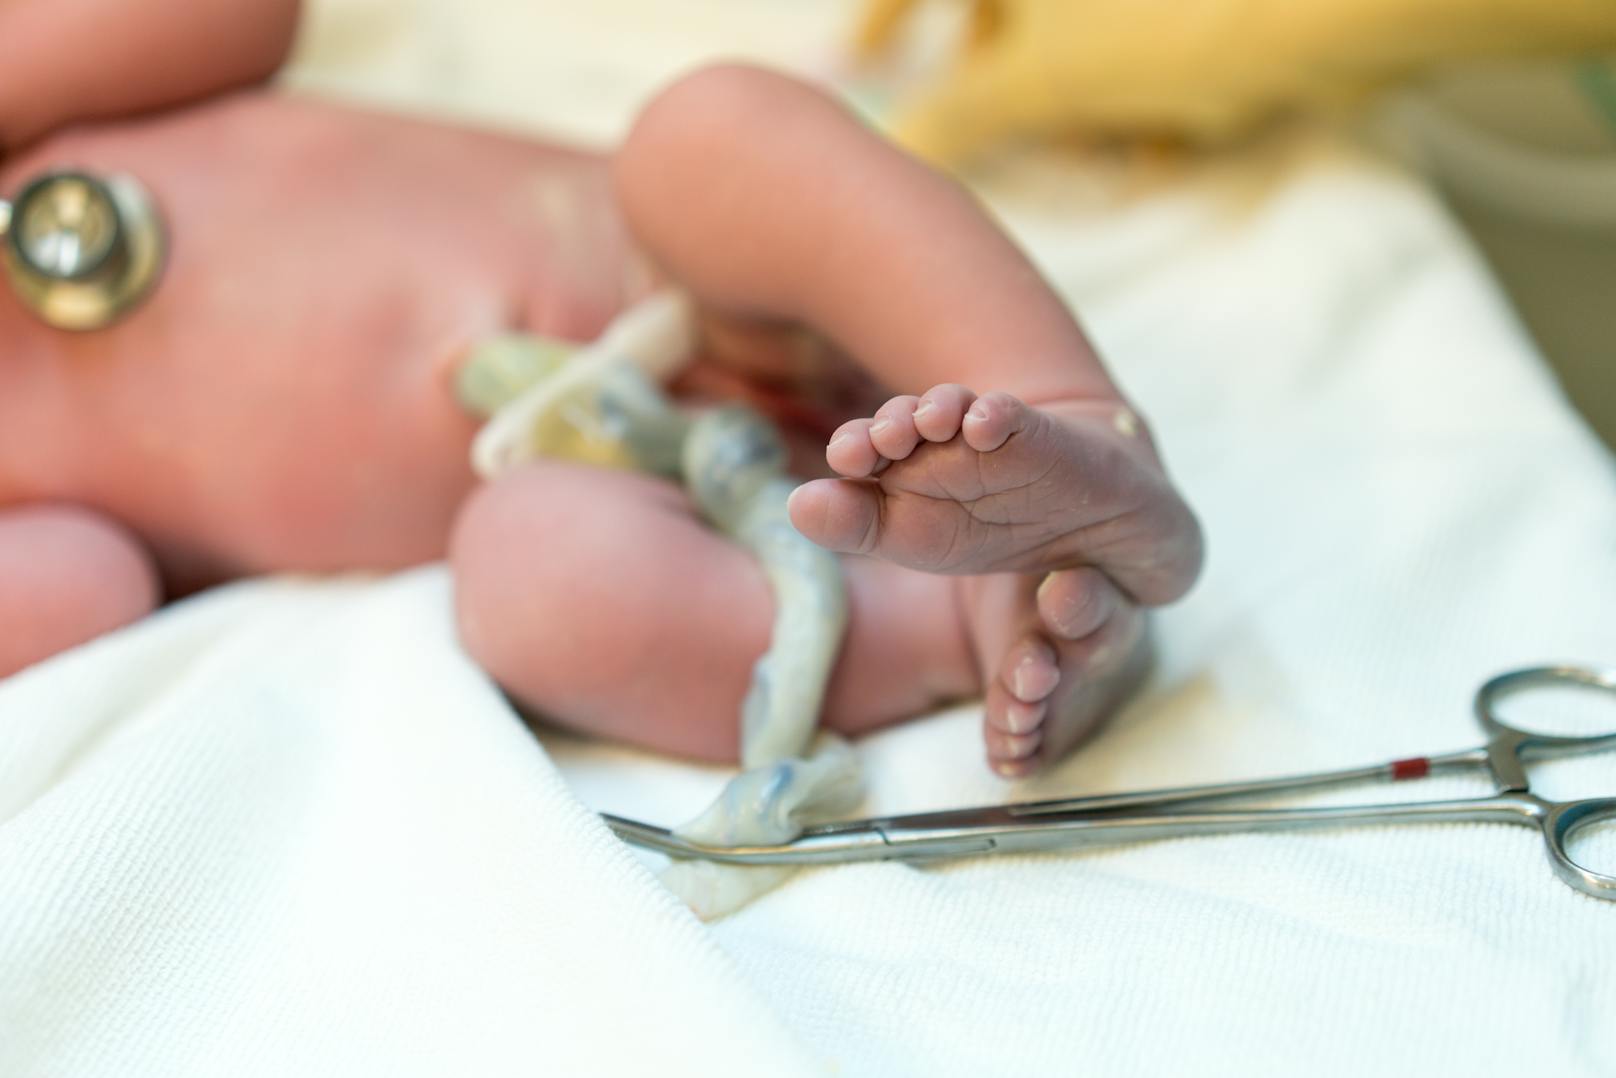 Schwangere können in seltenen Fällen Covid-19 auf ihr ungeborenes Kind übertragen, das haben Ärzte in Frankreich nun erstmals nachgewiesen.